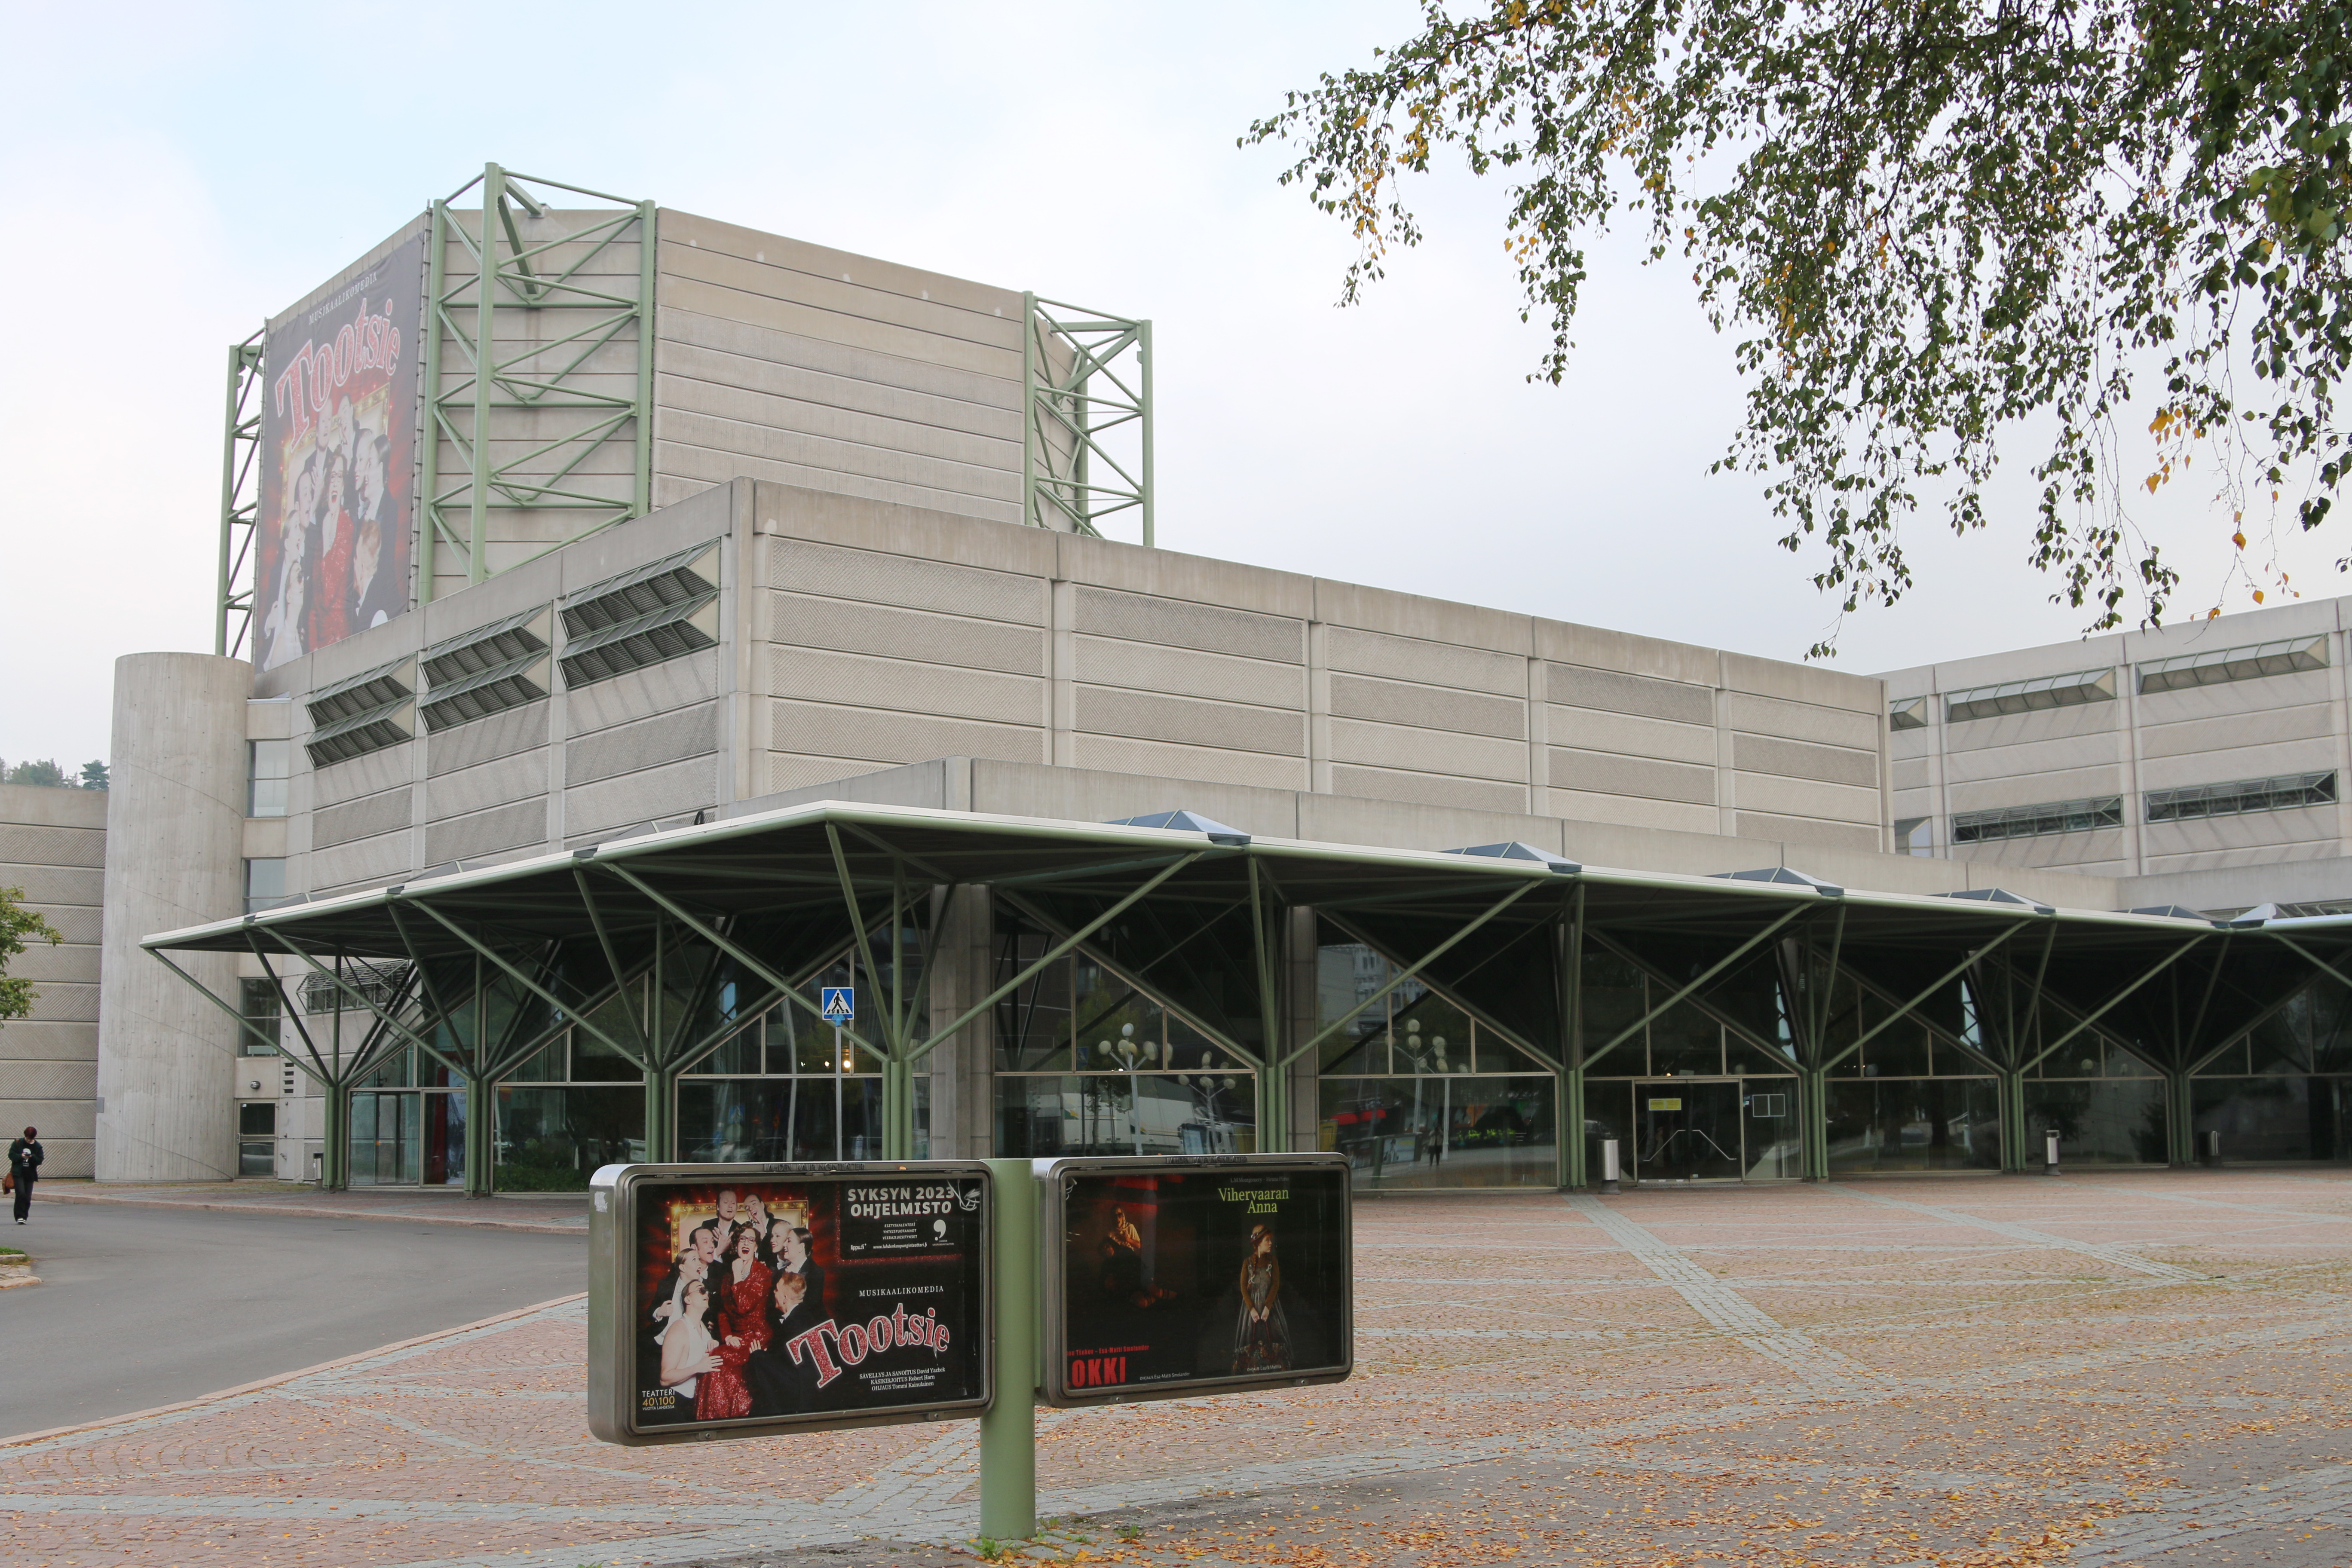 Kuvassa on Lahden kaupunginteatteritalo, joka on harmaata betonia ja siinä on metallirakenteita.